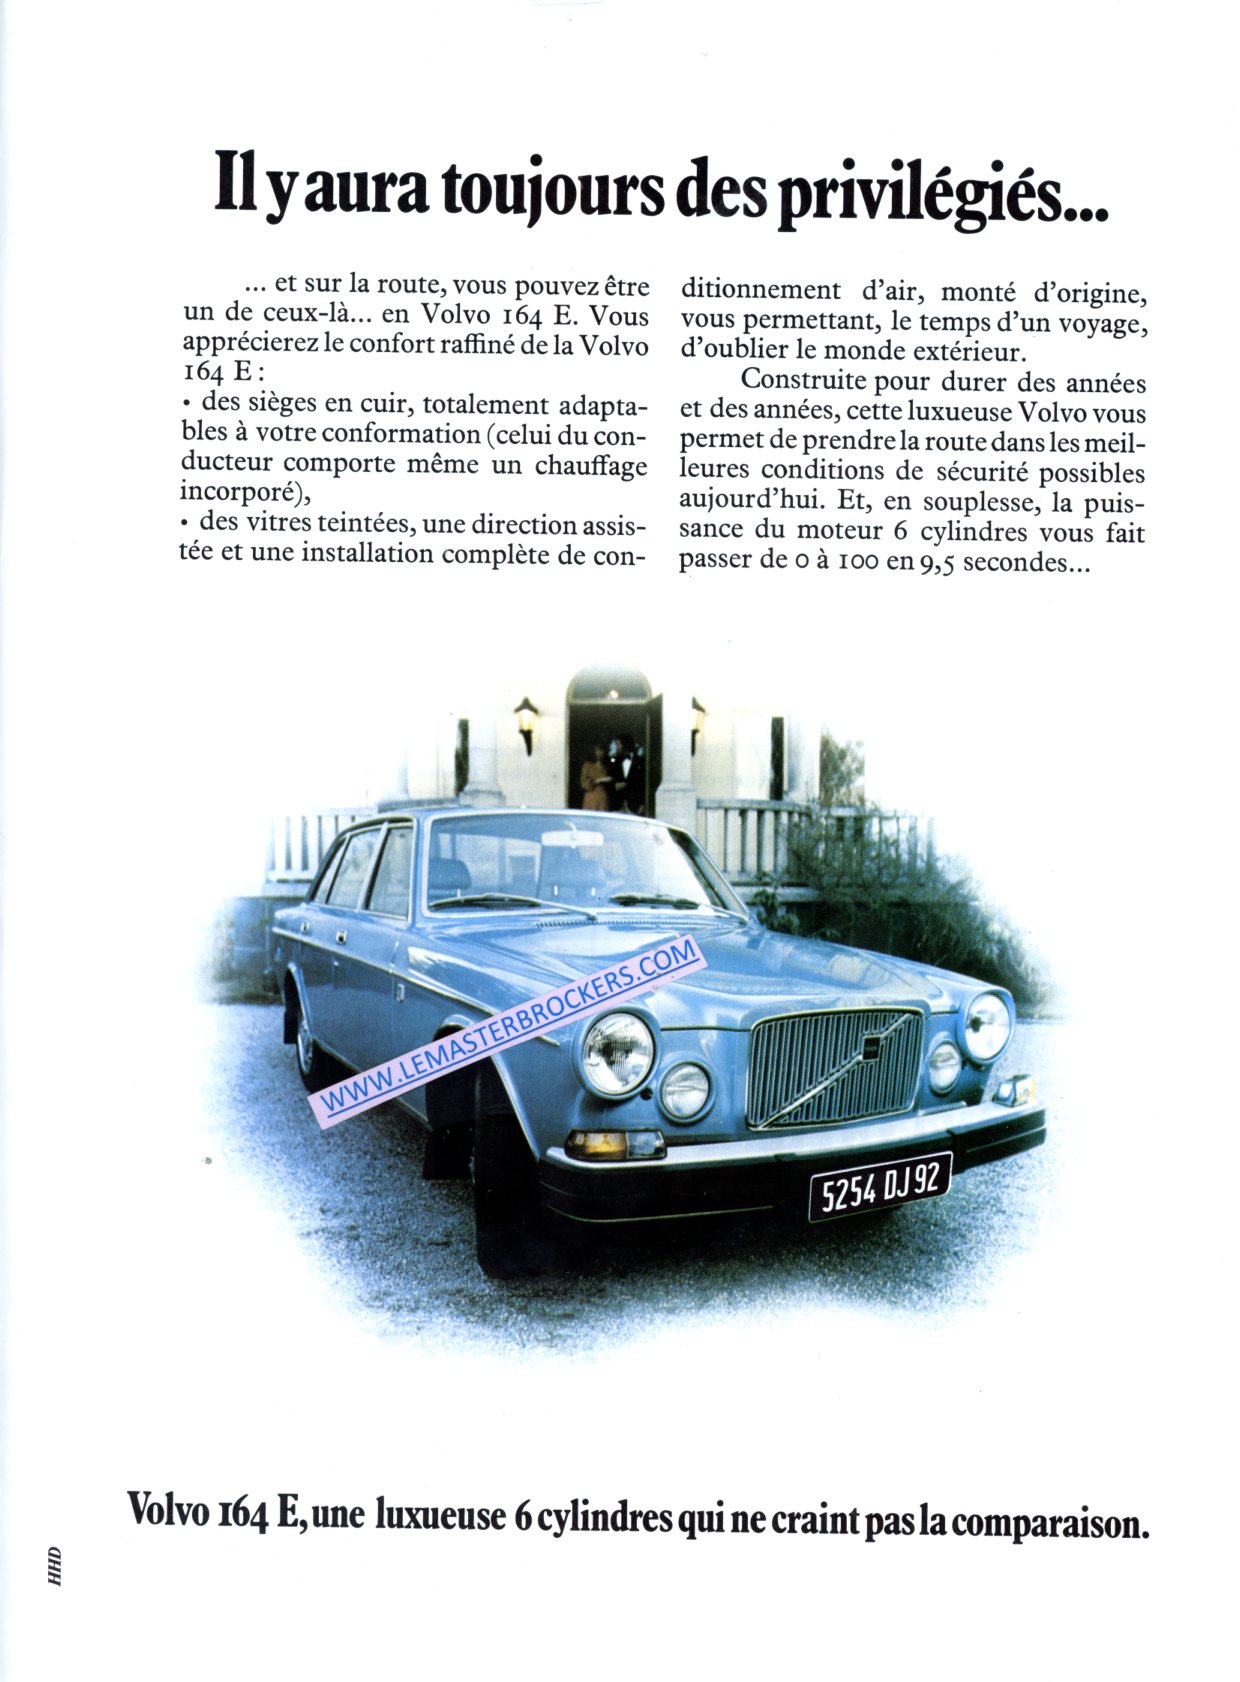 PUBLICITÉ VOLVO 164 E - ADVERTISING 1974